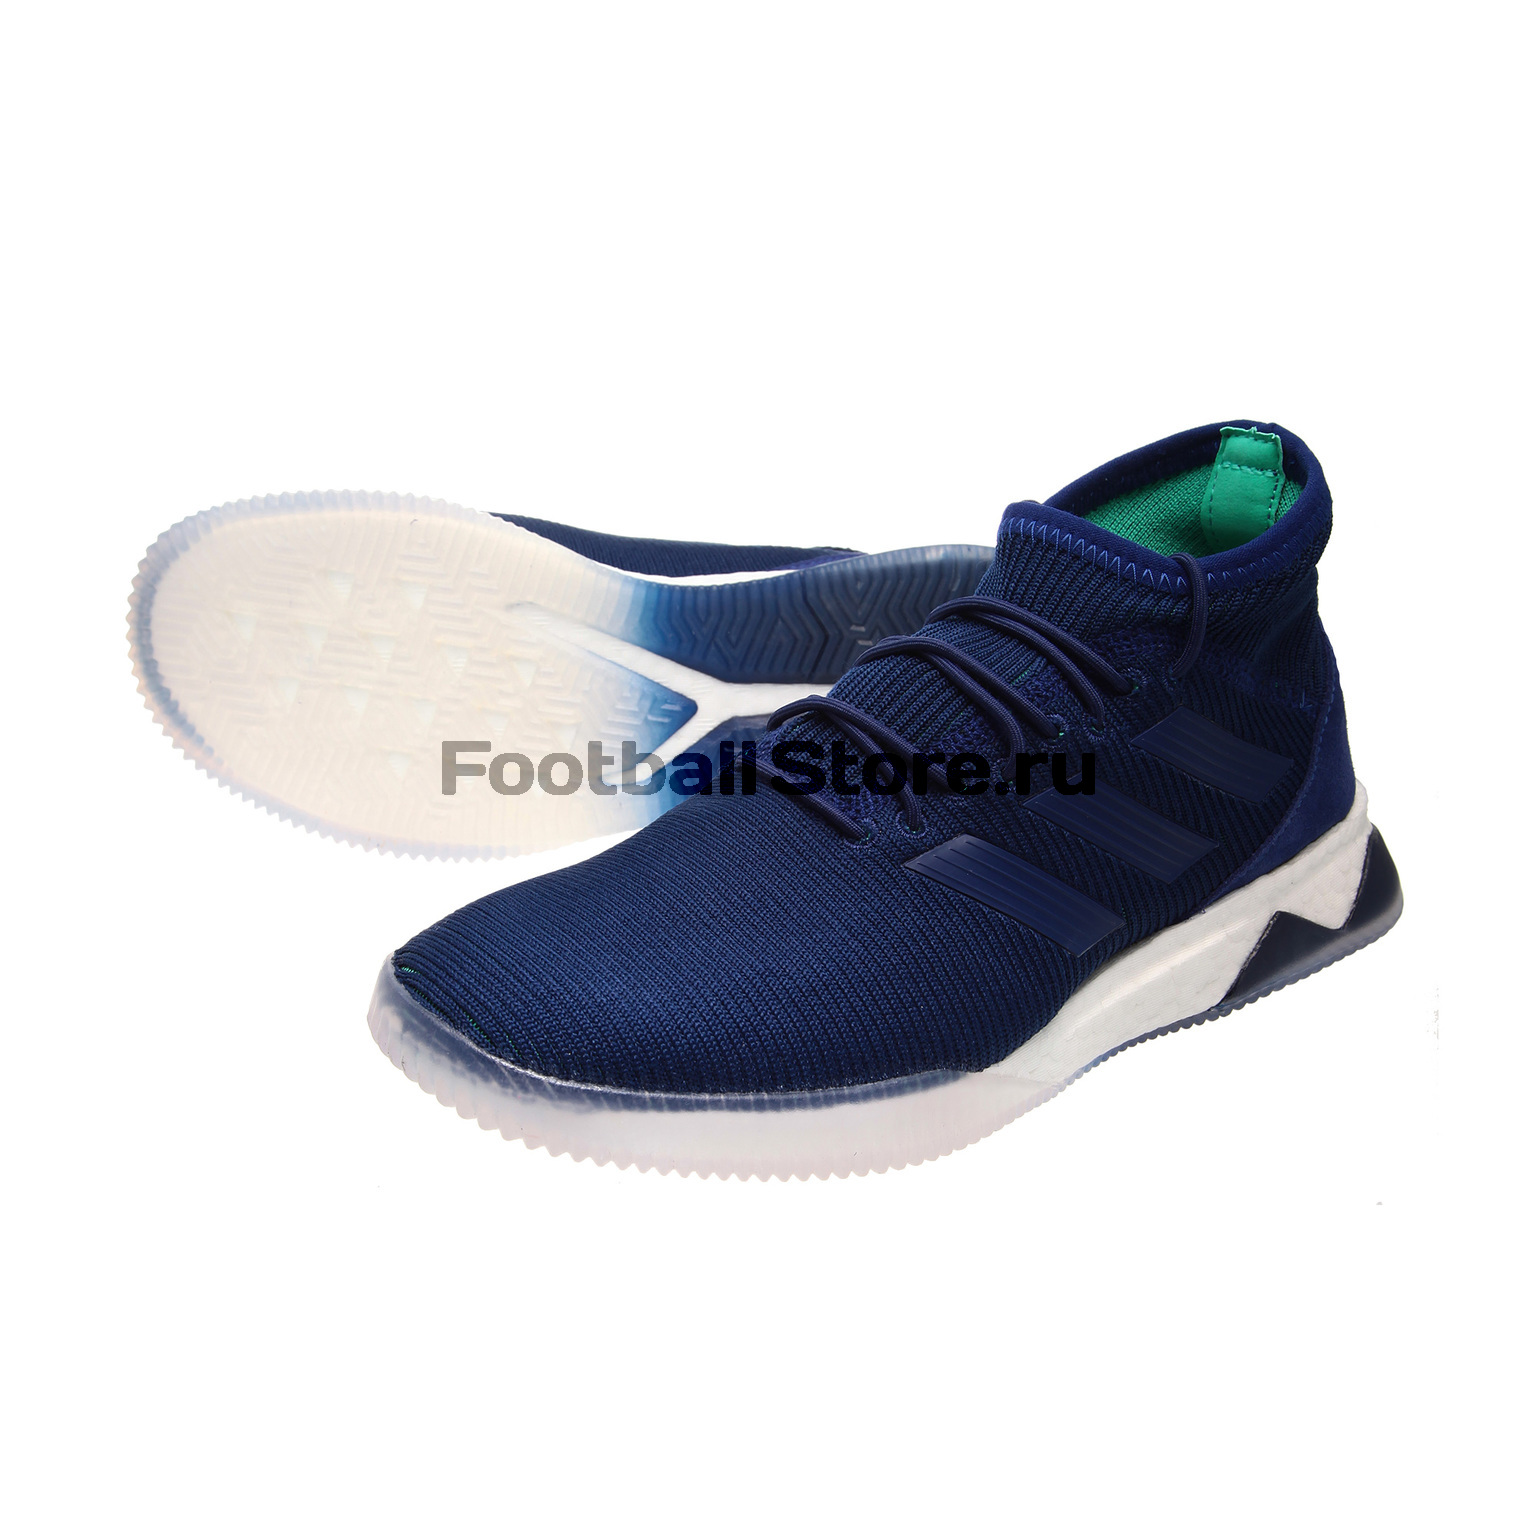 Футбольная обувь Adidas Predator Tango 18.1 TR CP9270